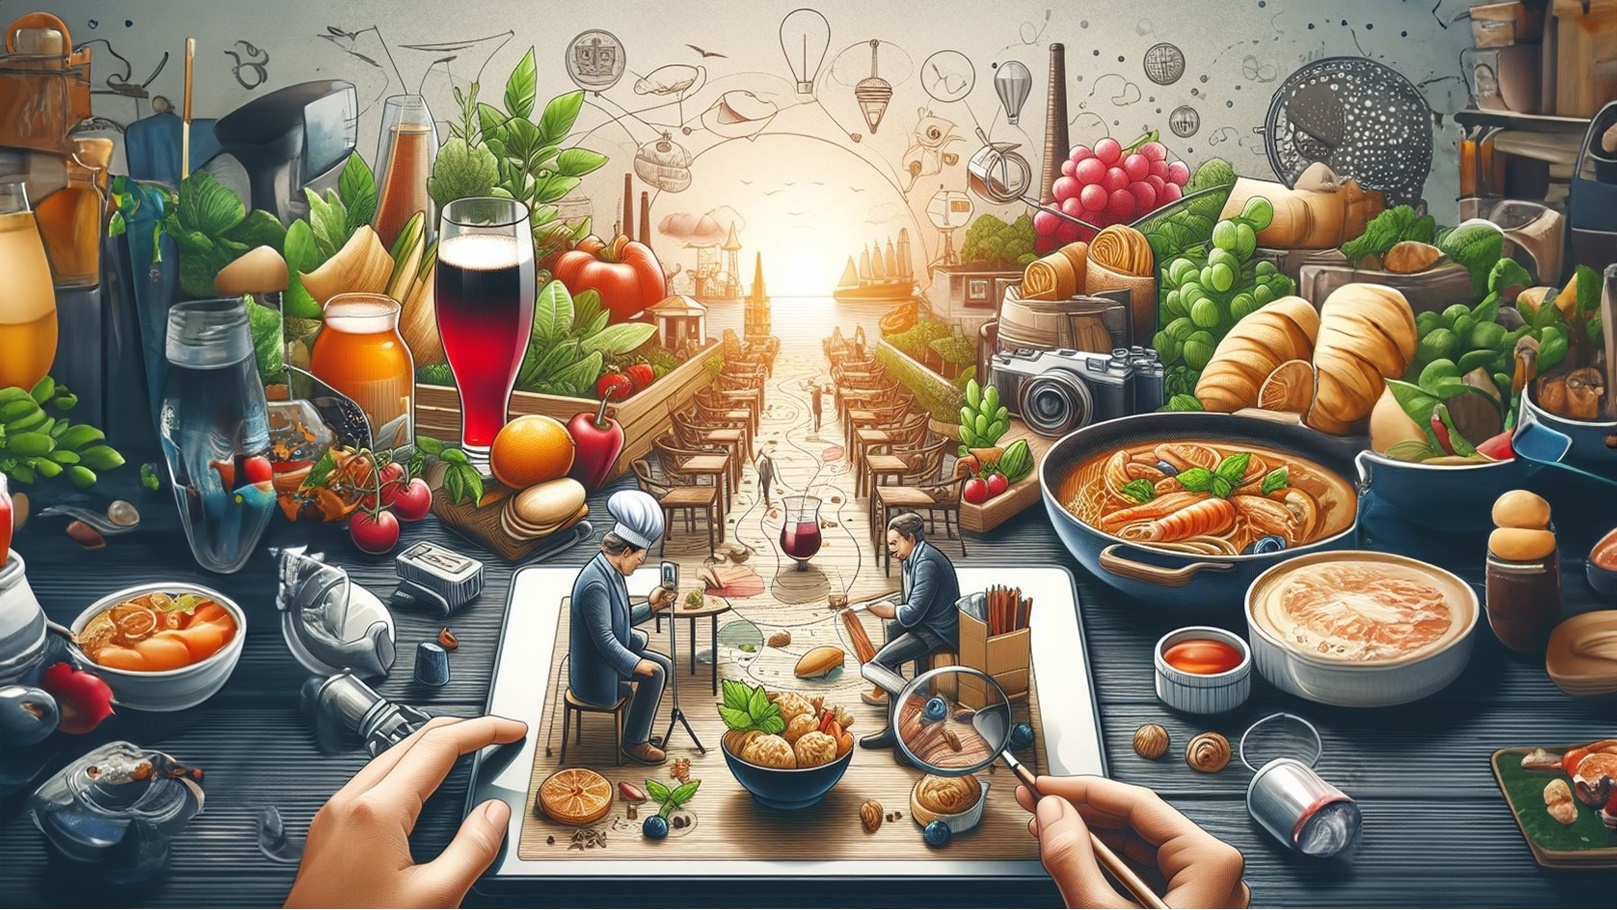 رحلة المطاعم في عالم التحديات...كيف تستجيب المطاعم بإبداع لتحديات السوق الراهنة؟
